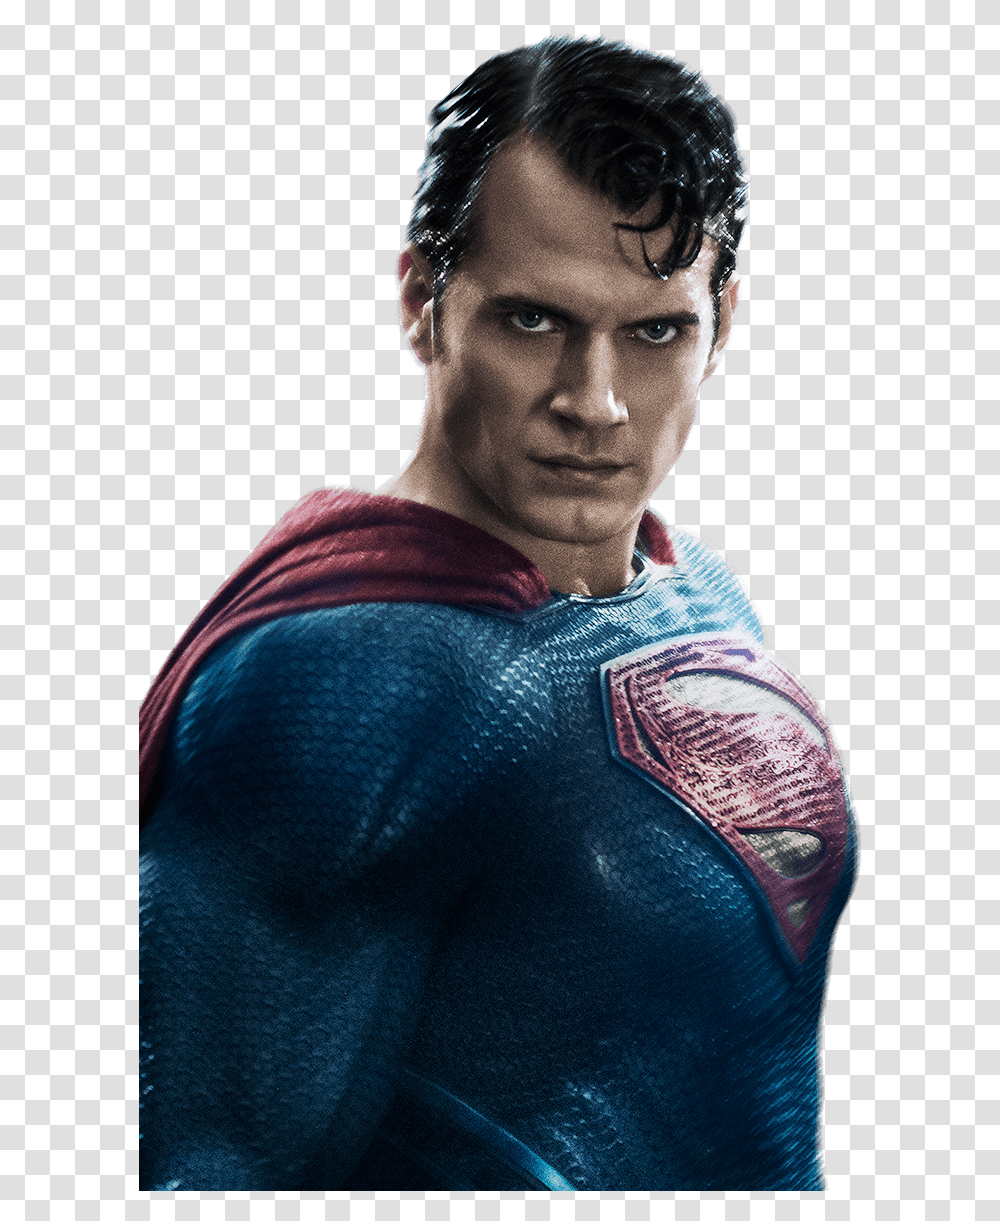 Http Batmanvsuperman Dccomics Batman V Superman Superman, Person, Face, Skin Transparent Png